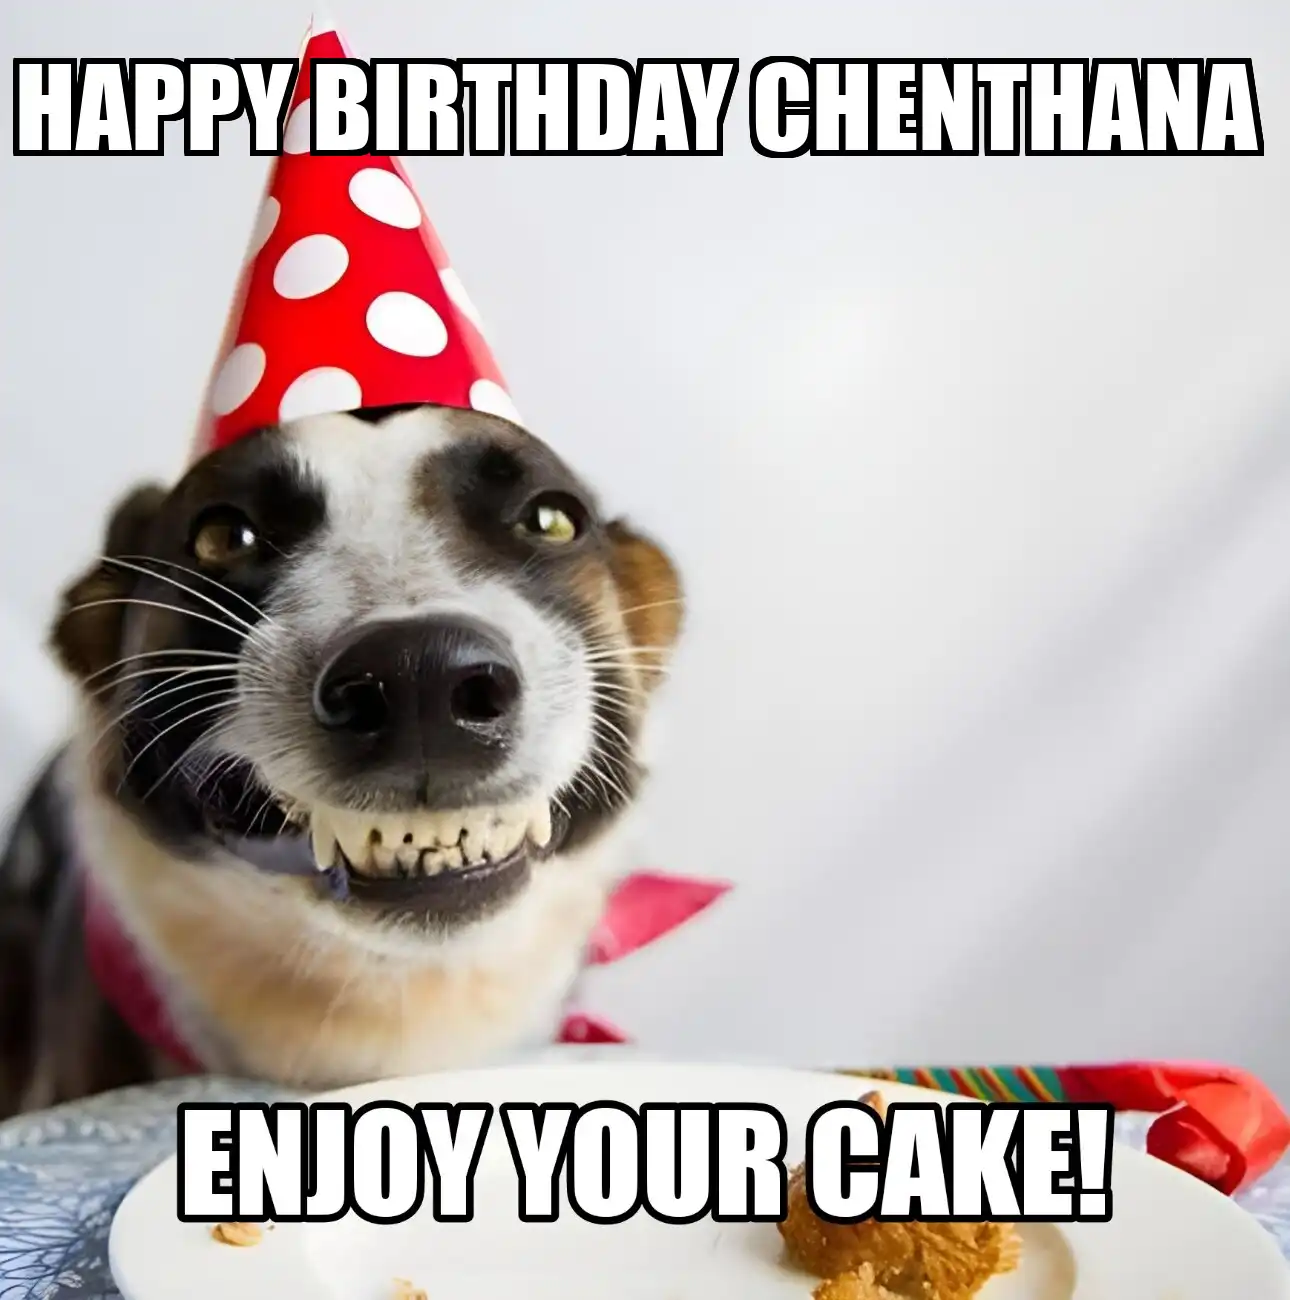 Happy Birthday Chenthana Enjoy Your Cake Dog Meme